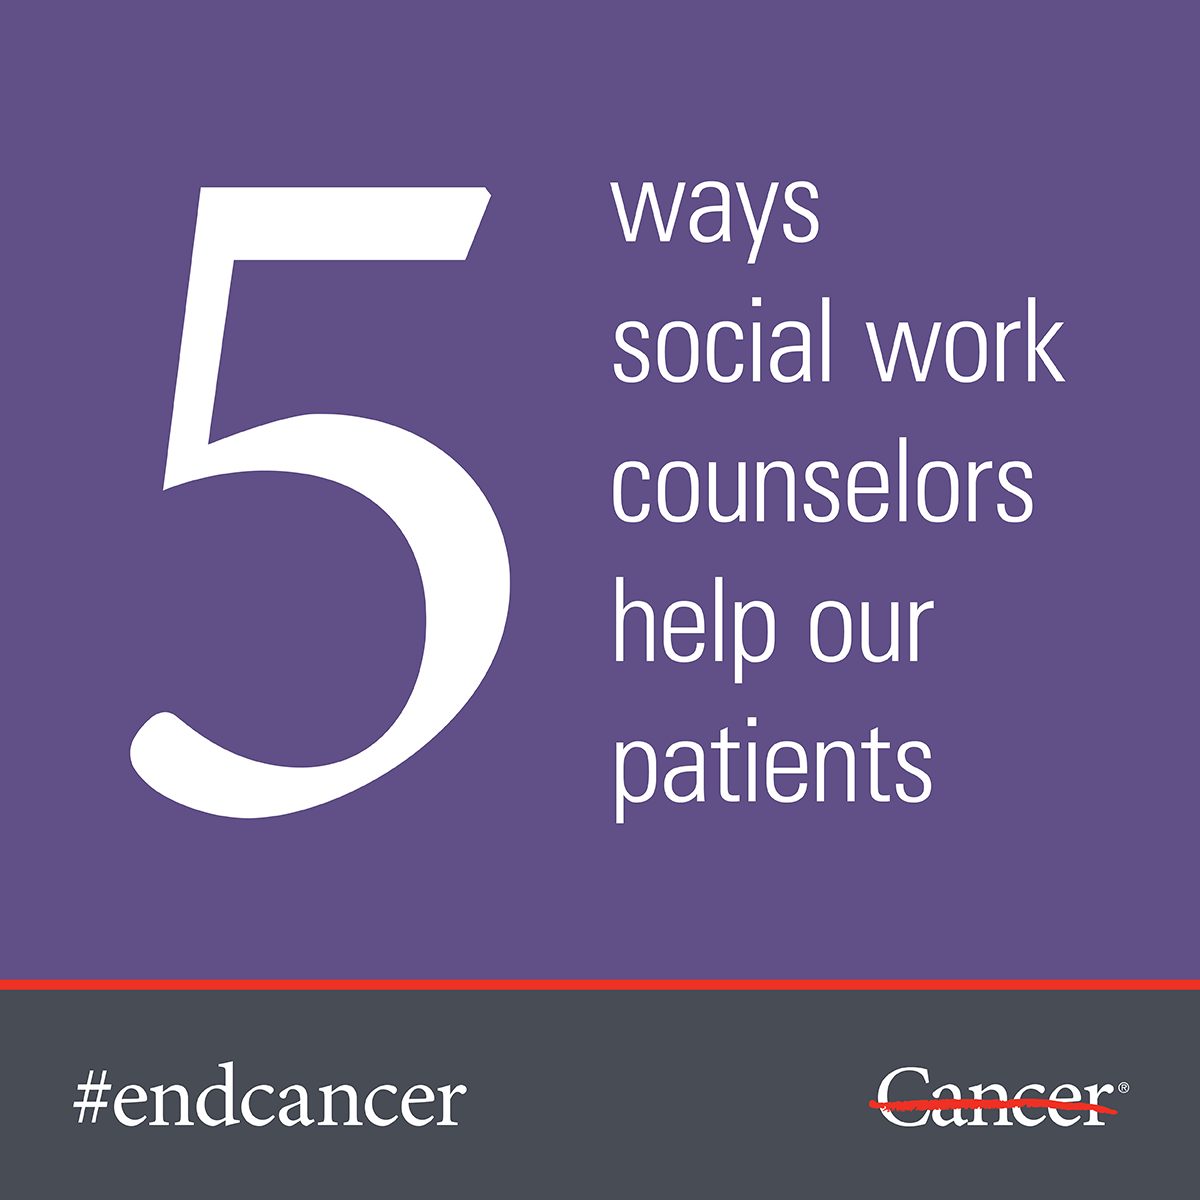 了解MD安德森的社会工作顾问如何在你的癌症治疗期间提供帮助。